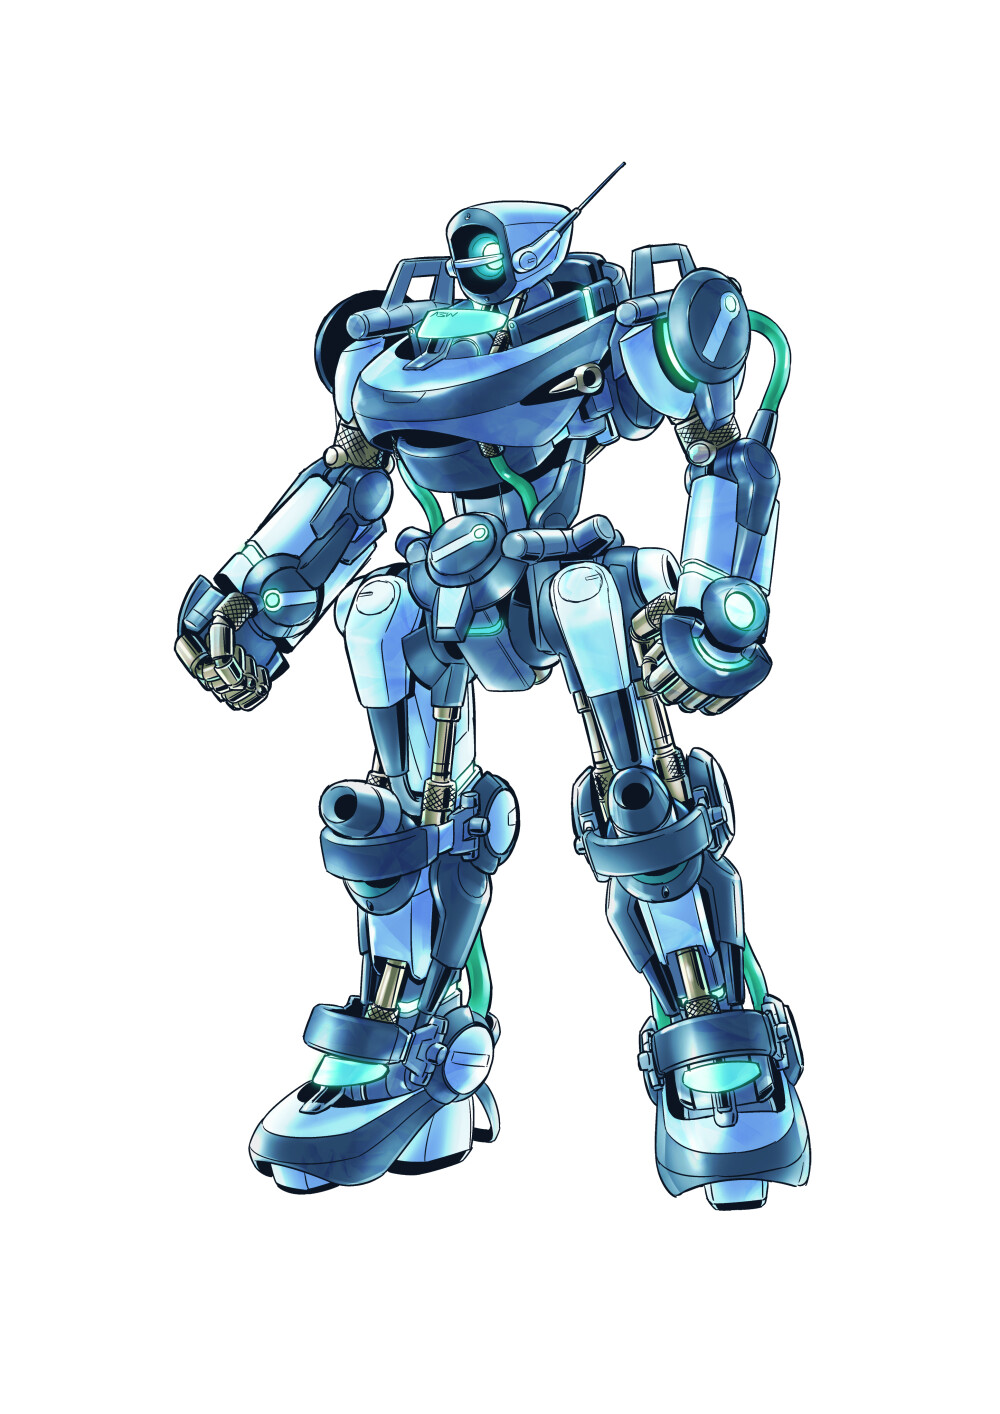 通过盒子机器人来描绘原创机器人,hobby japan授权超级机甲绘制技法全